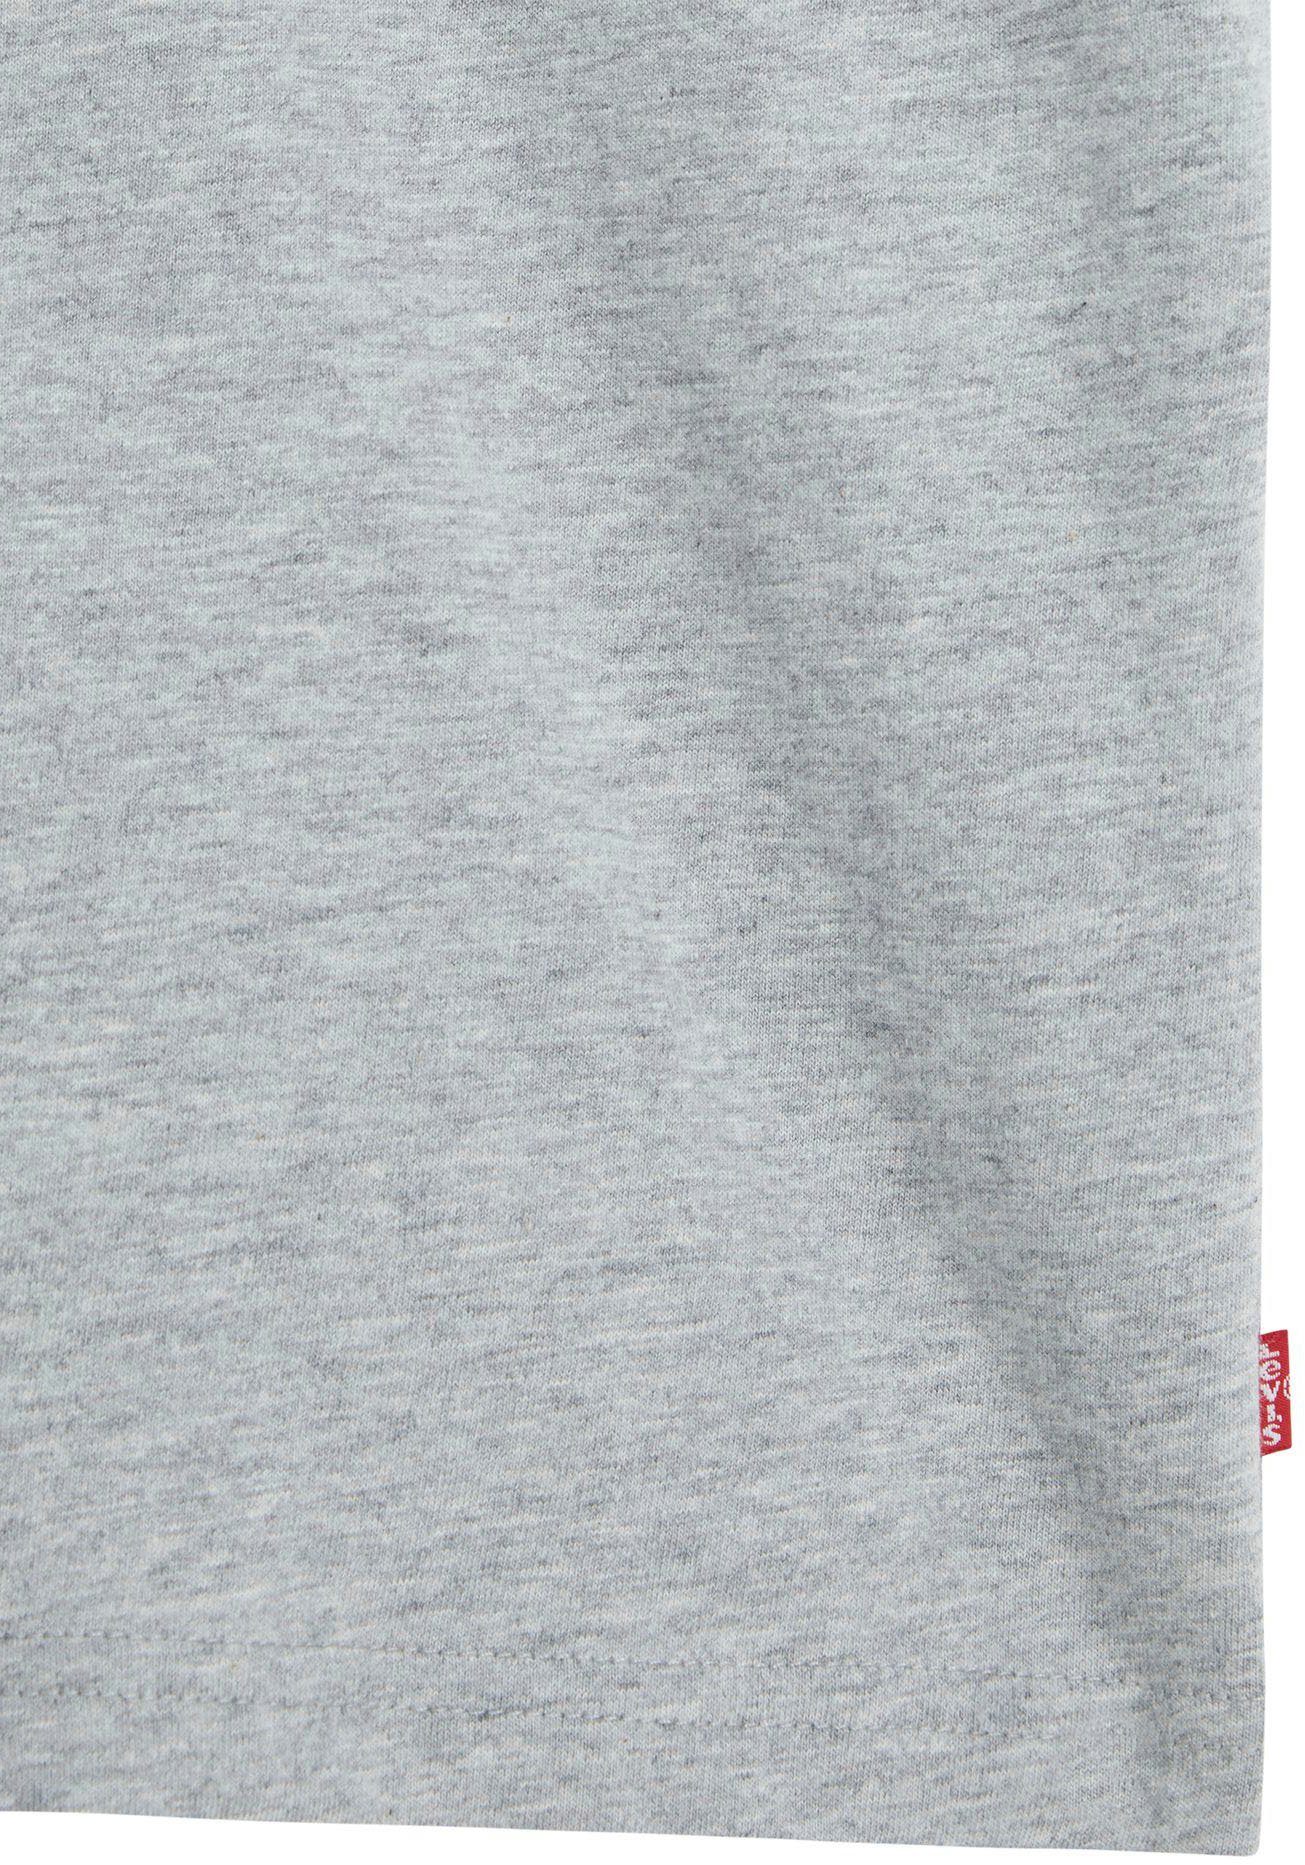 Levi's® Tee T-Shirt Graphic grau